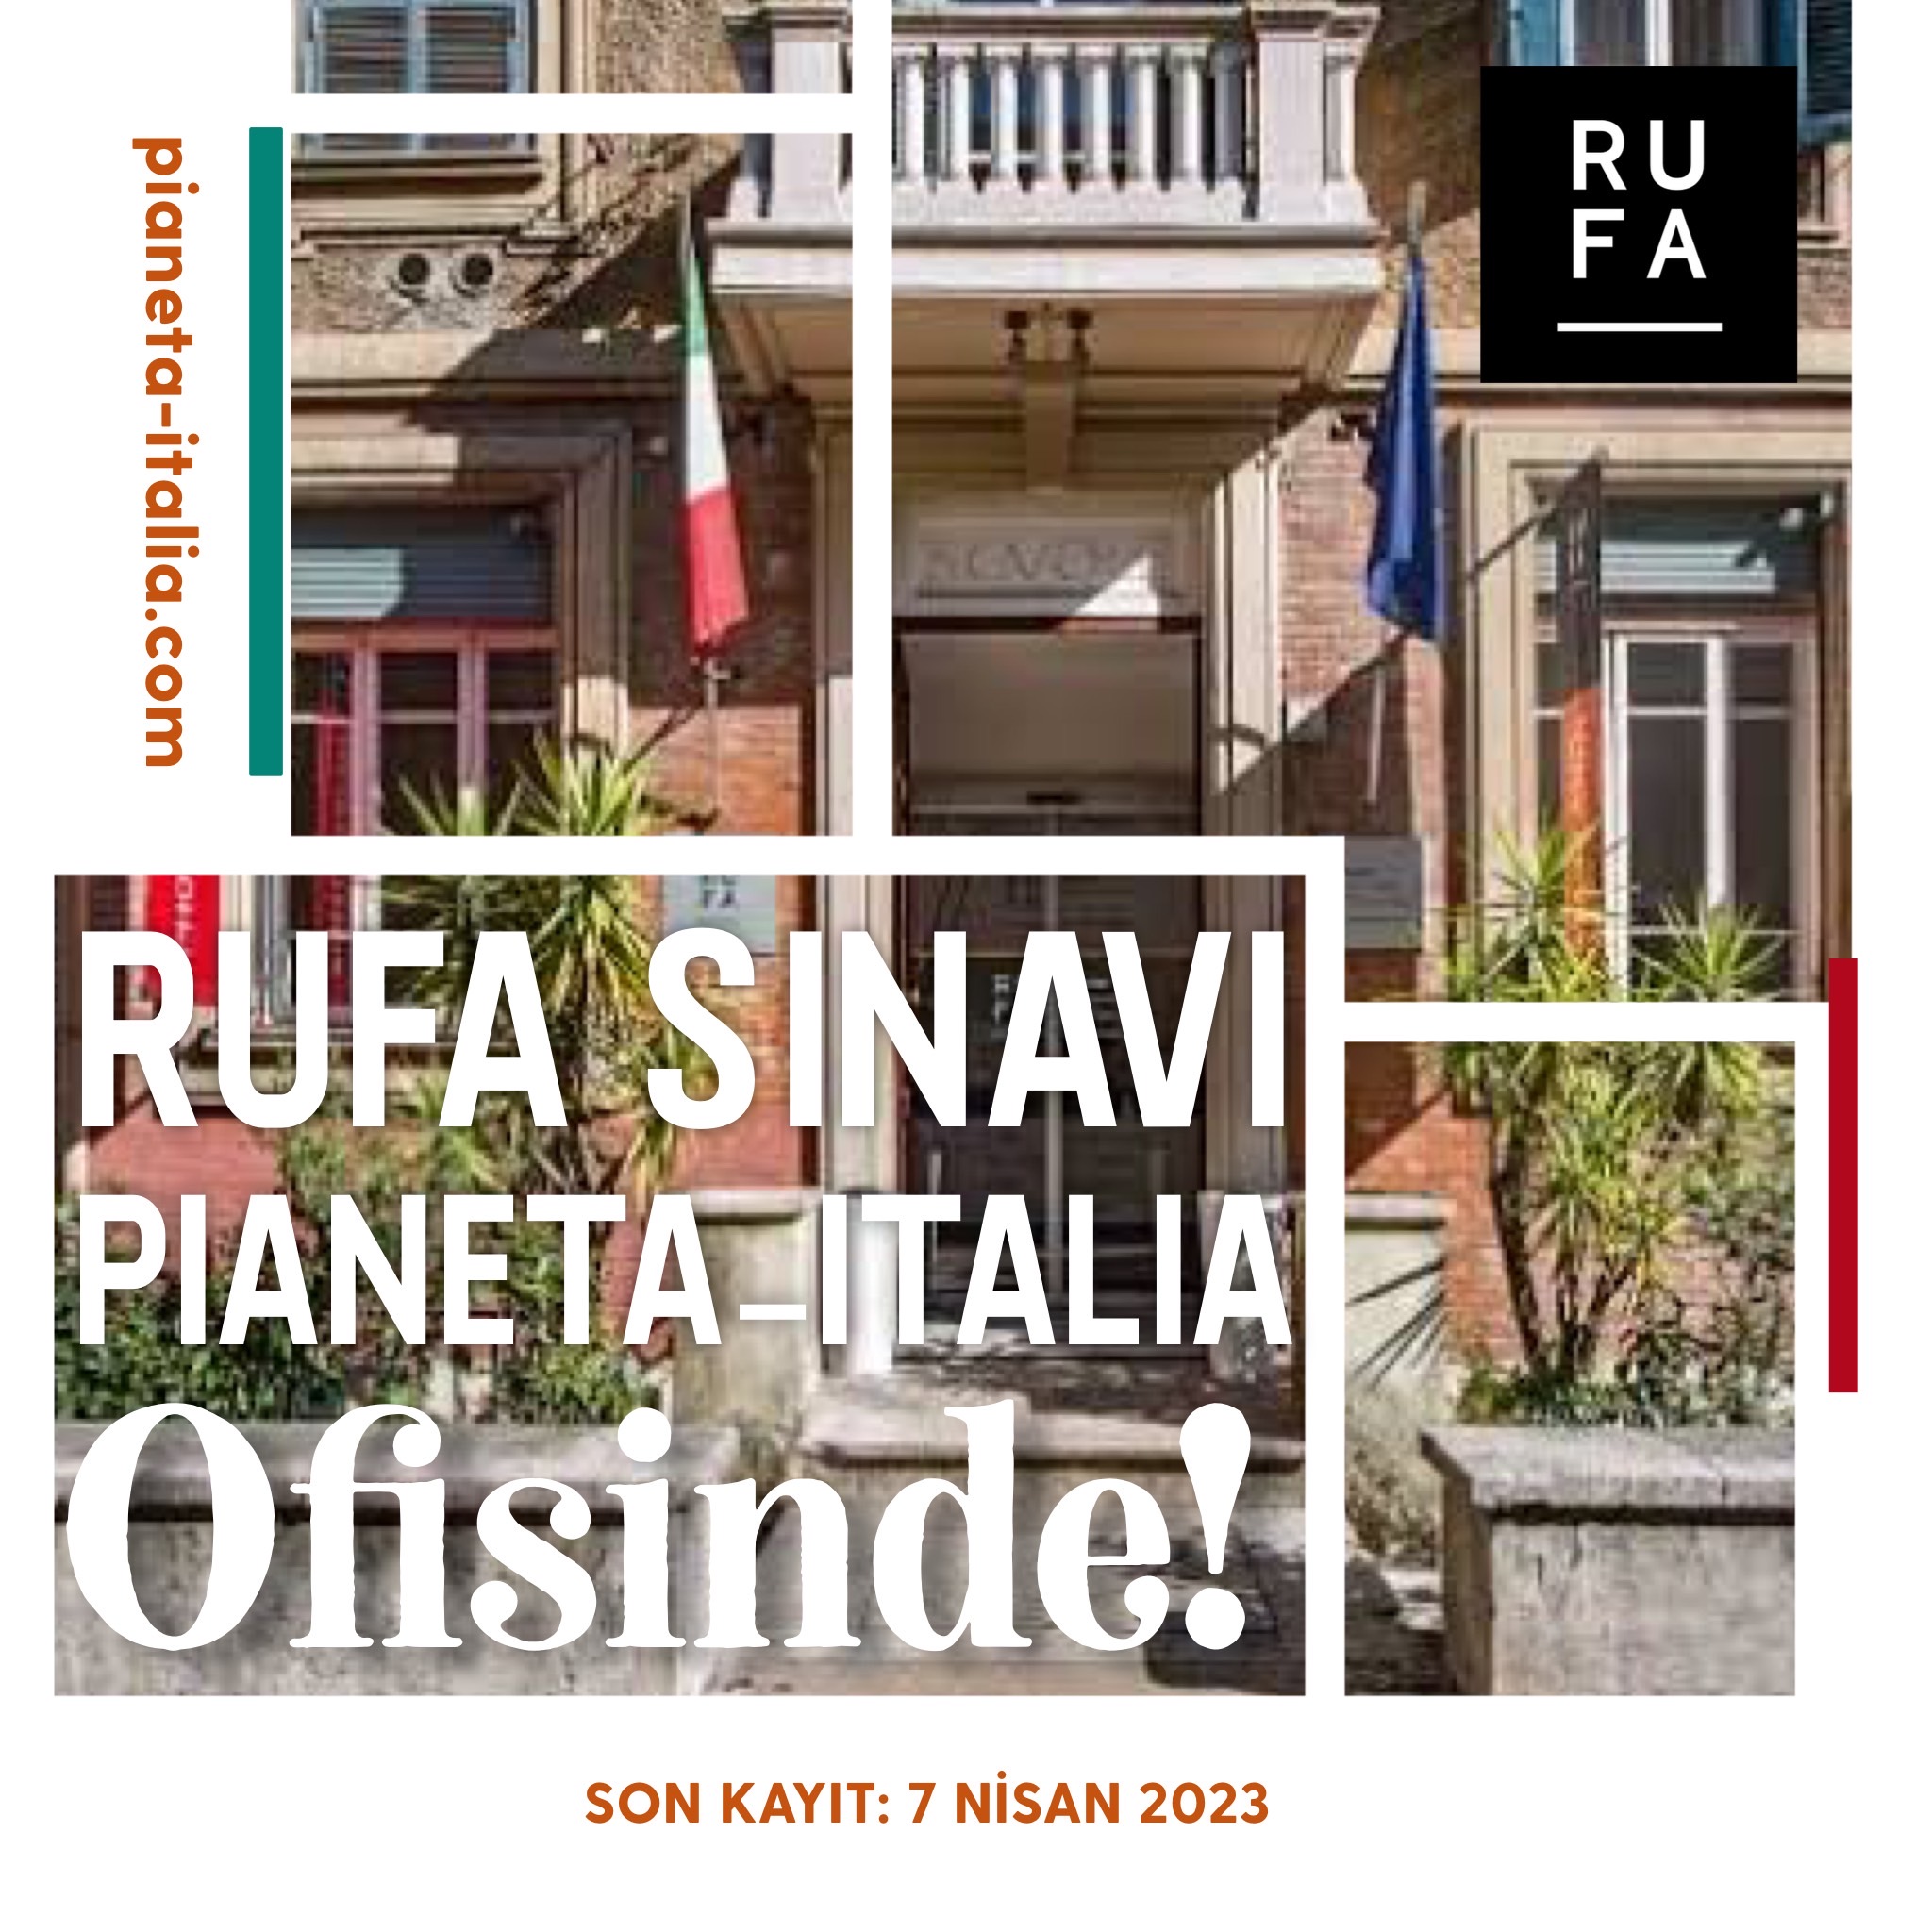 RUFA Sınavına Pianeta Italia ayrıcalığıyla girin!